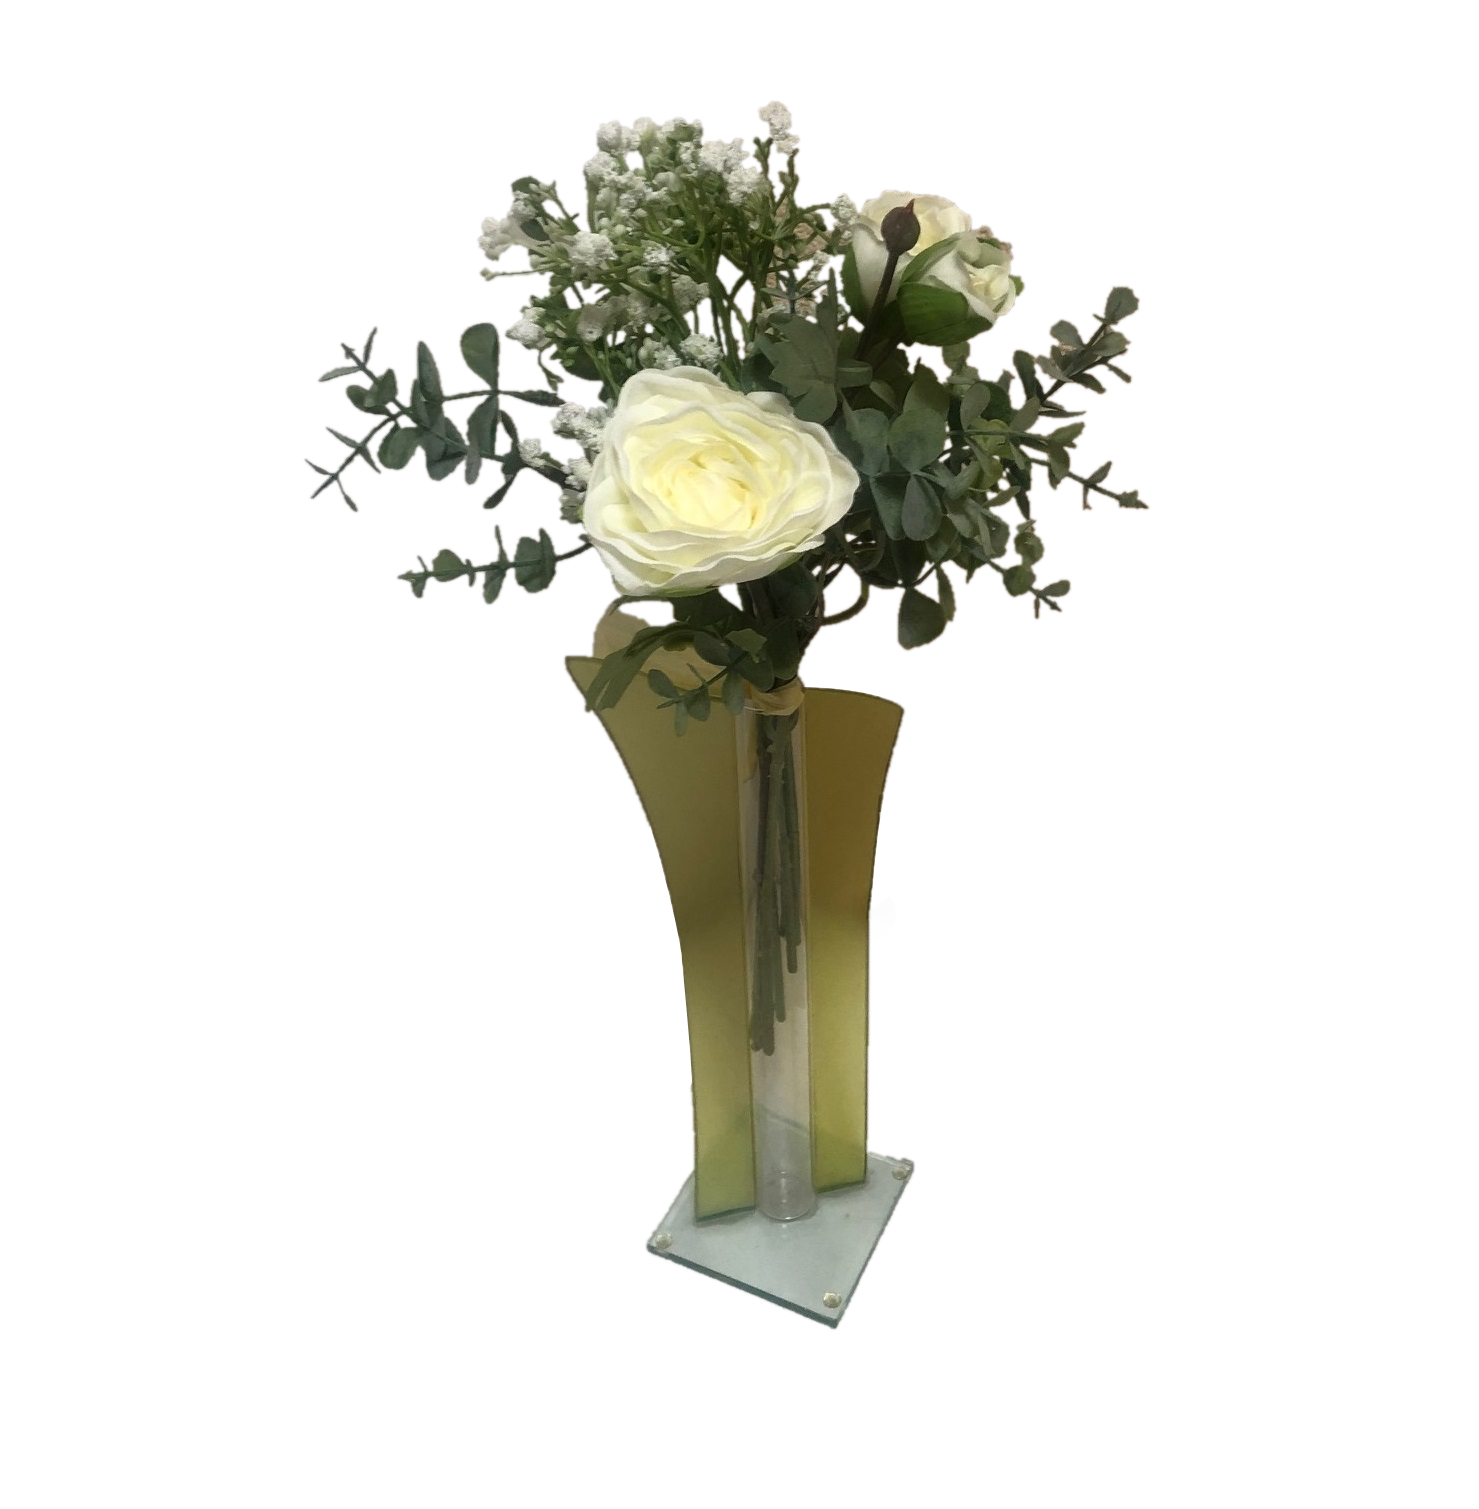 Rosenstrauß, Frühlingsstrauß Kunstblumen 36cm lang Weiß/creme